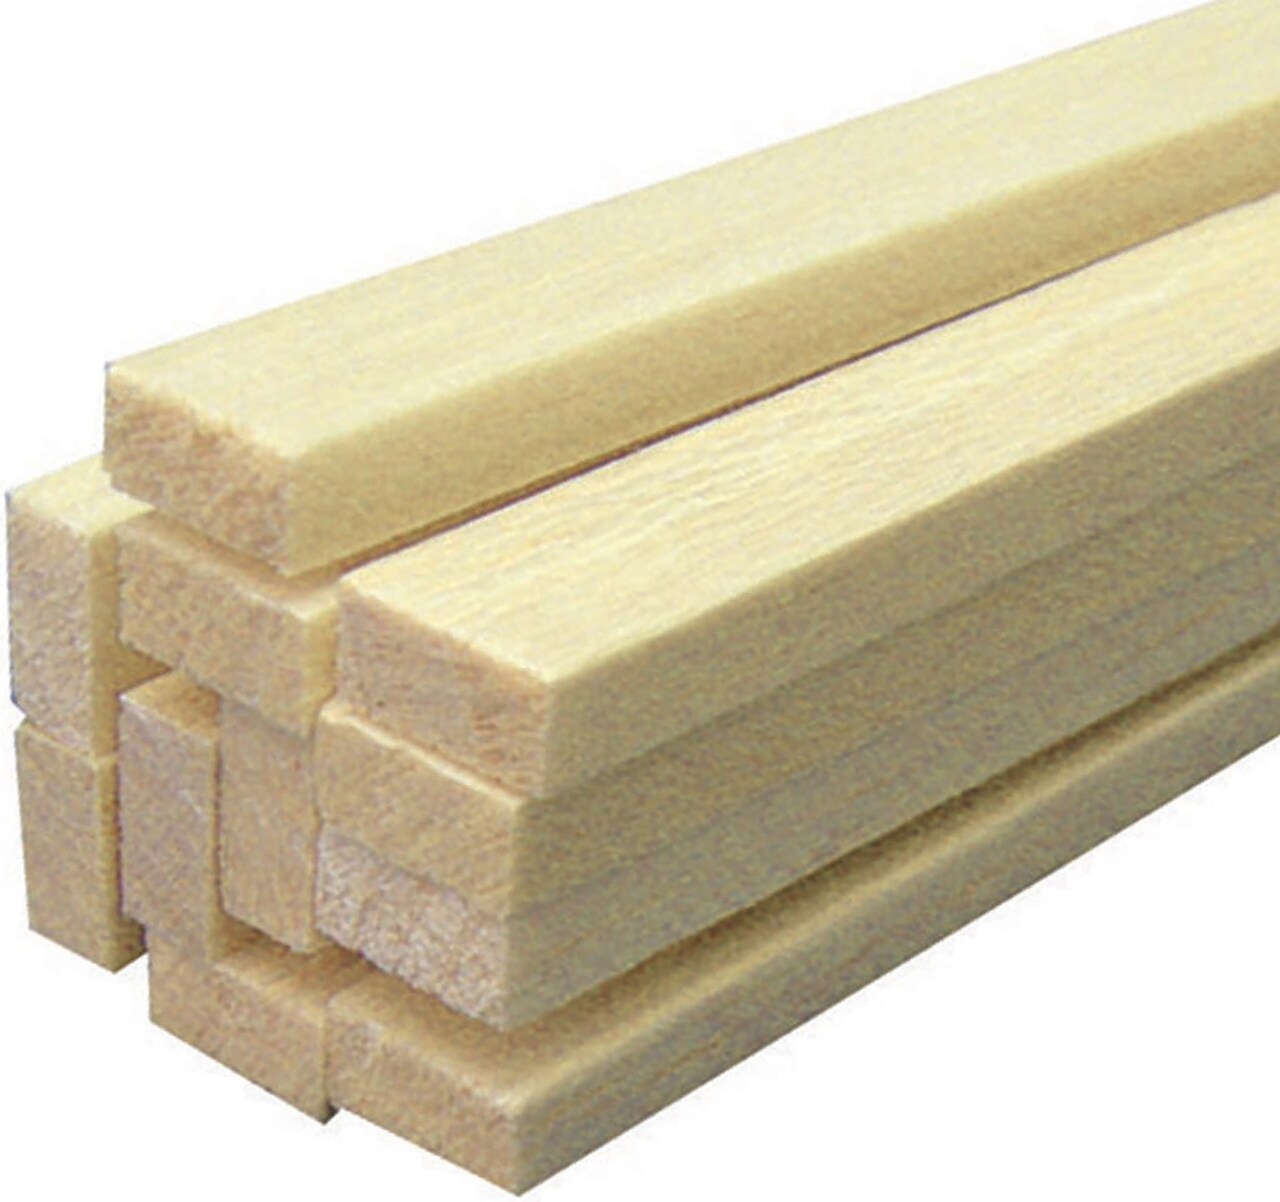 Balsa Wood Strip 36-1/4X1/2